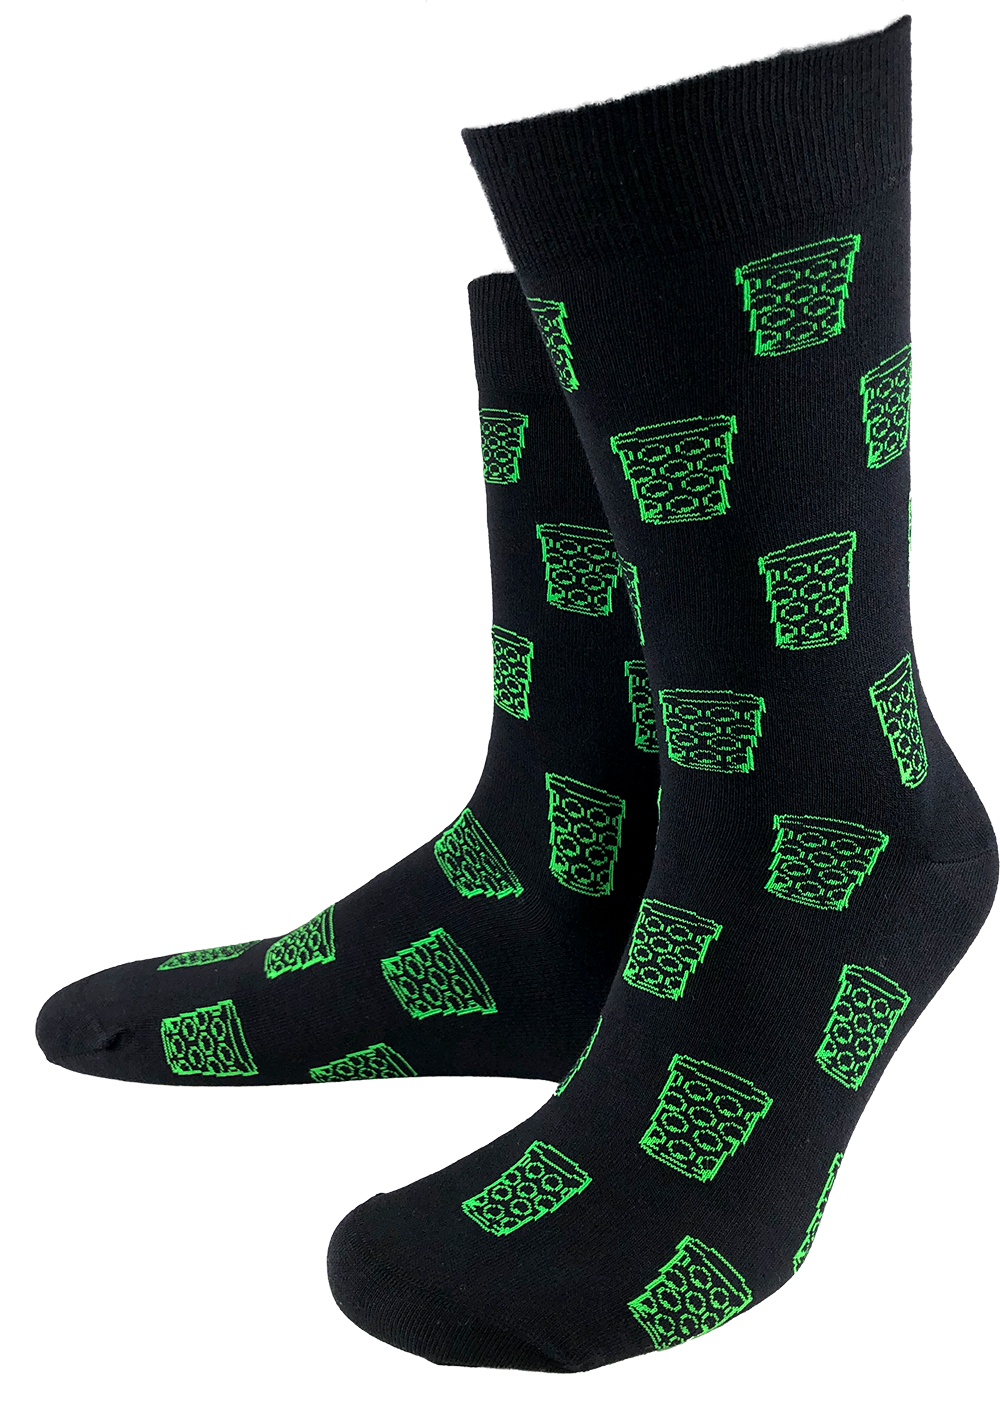 Socken &quot;coole Pälzer Socke&quot; (schwarz/grün) - Pfälzer Freiheit